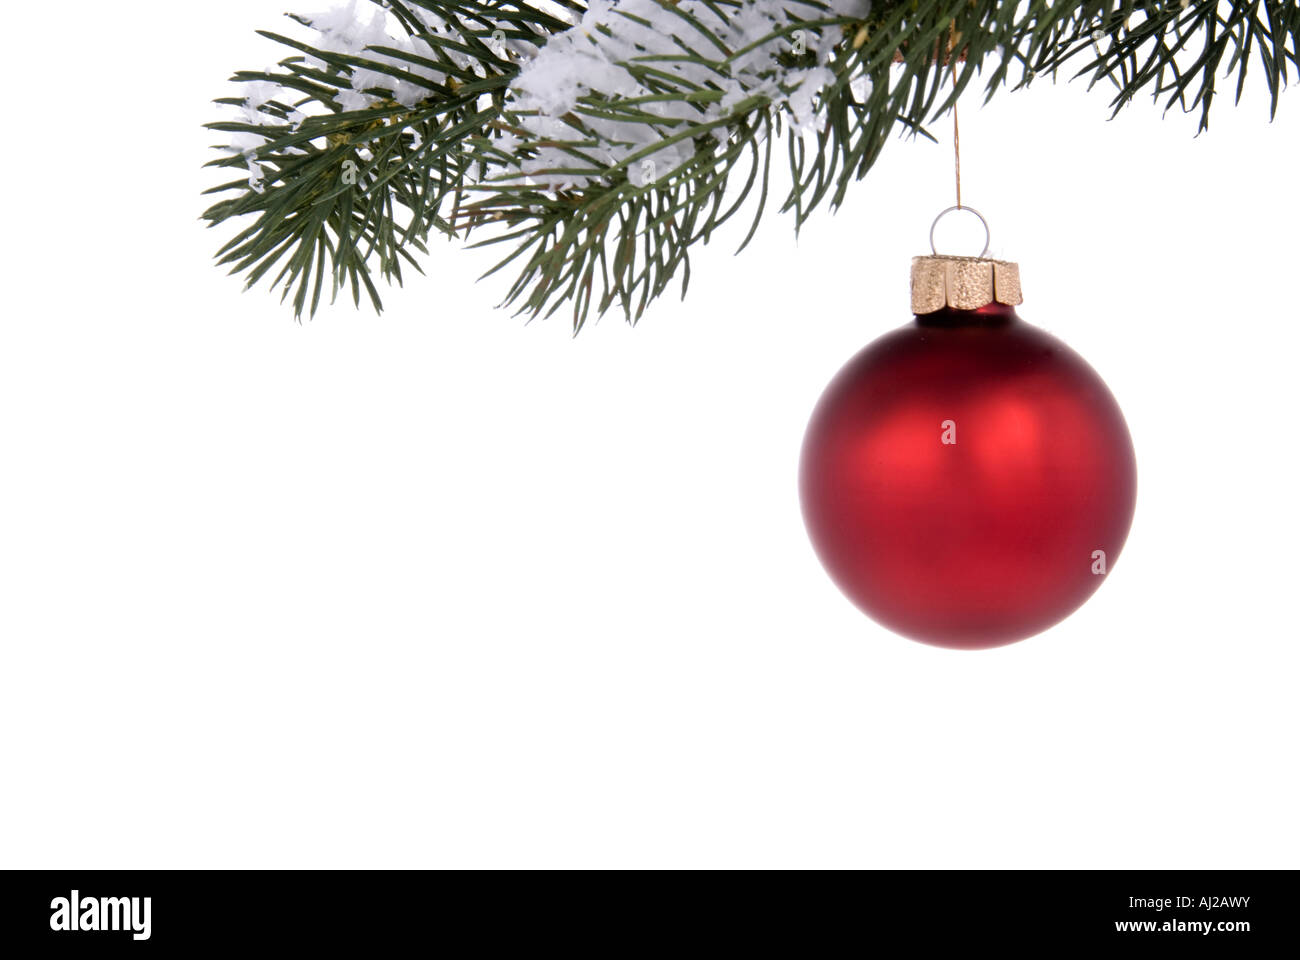 Ornement d'arbre de Noël rouge suspendu à une branche d'arbre de pin sur fond blanc Banque D'Images